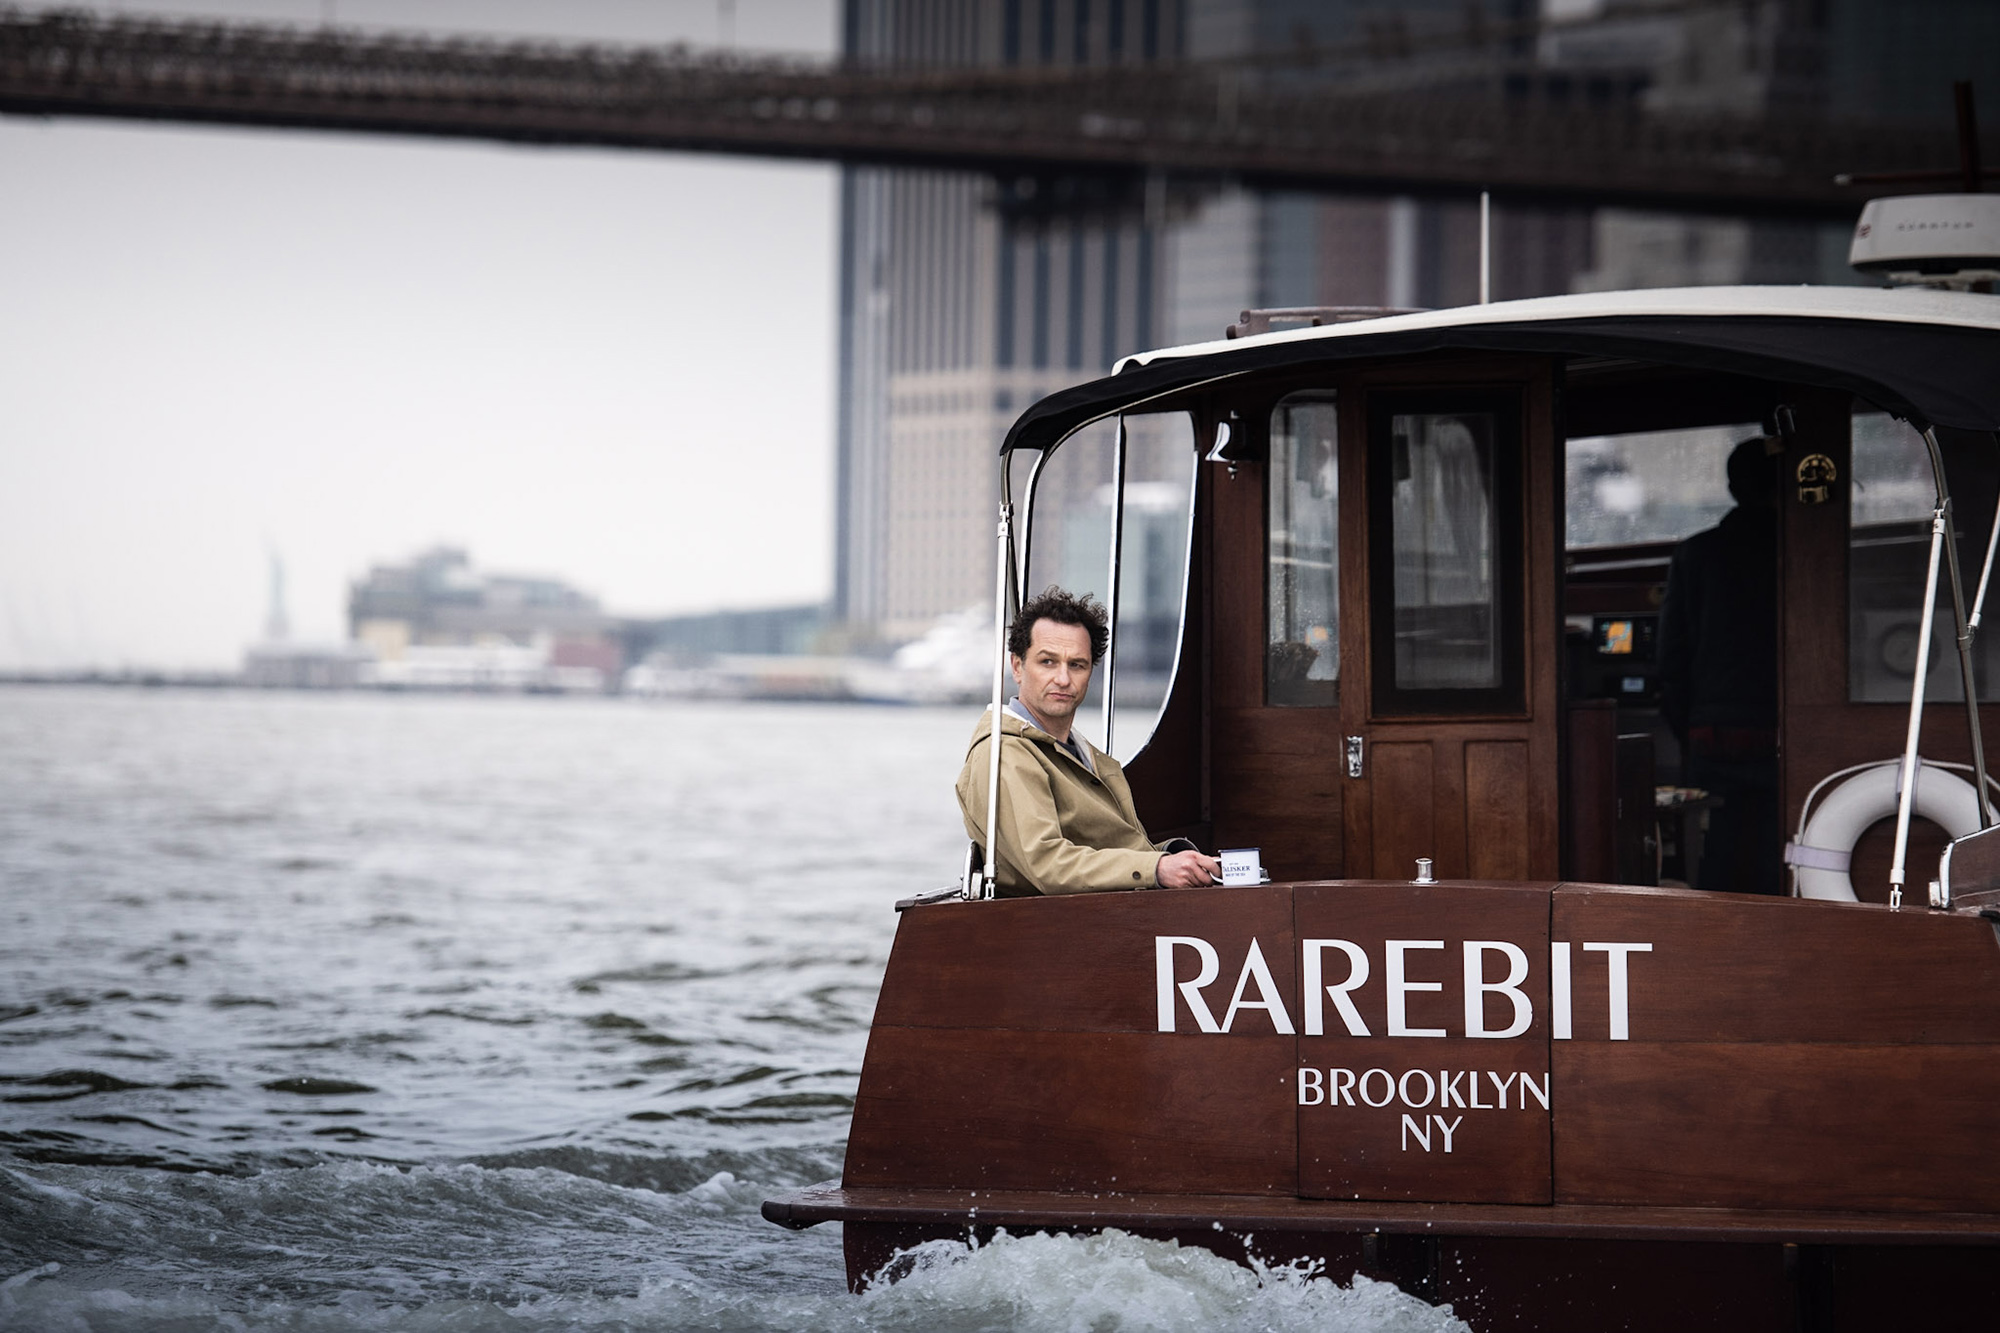 Rarebit boat